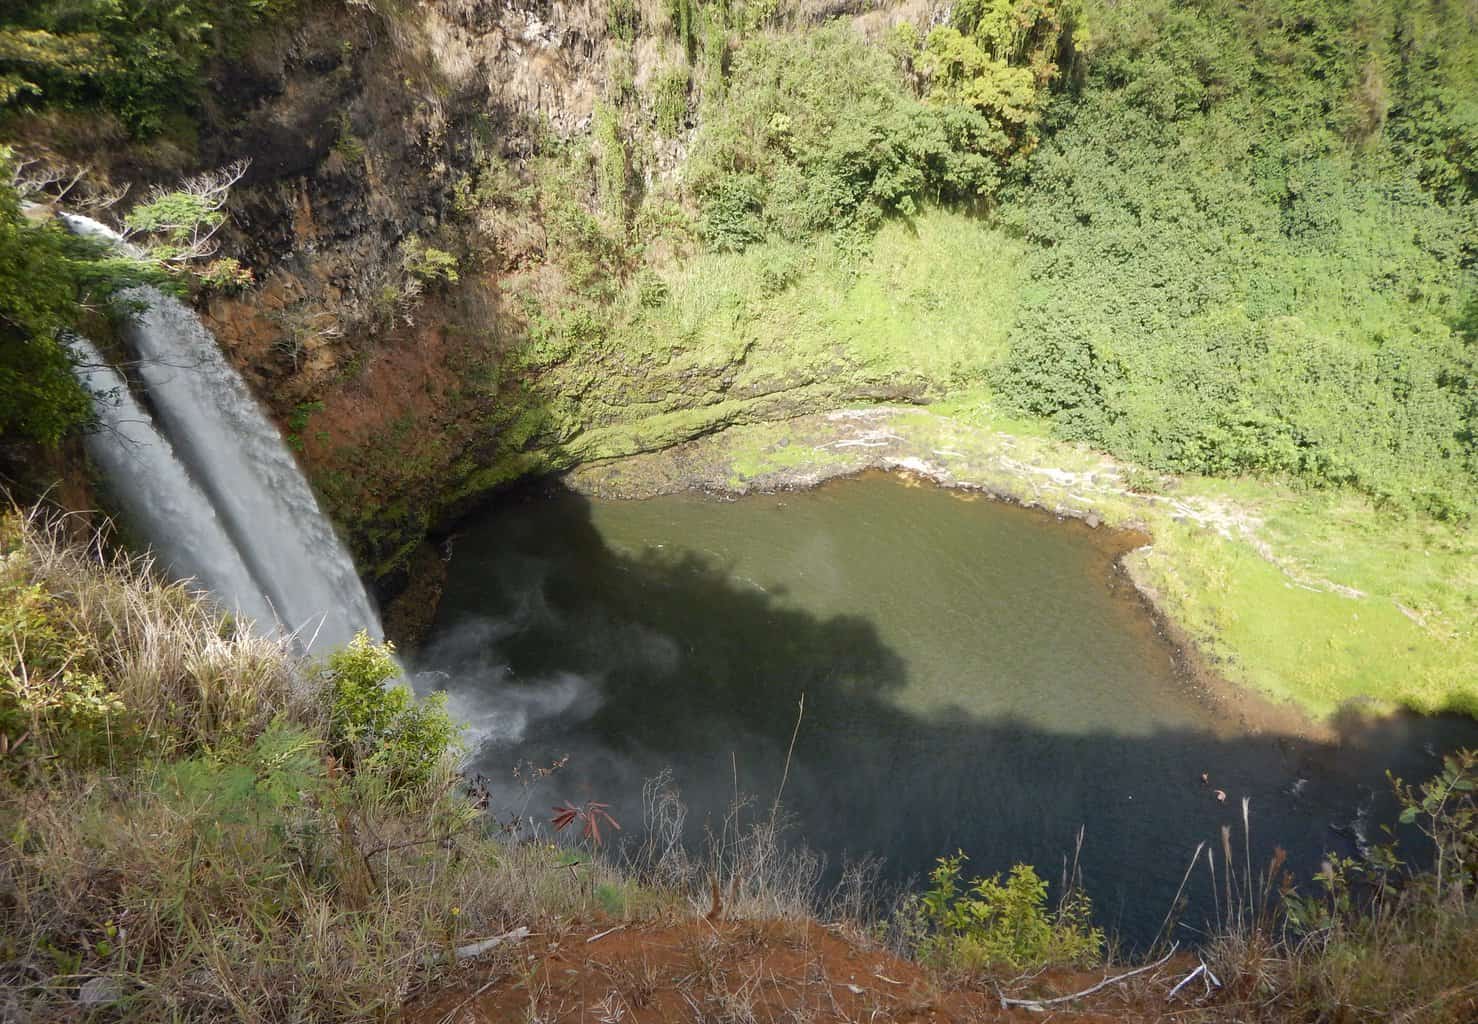 Wailua Falls from a top view